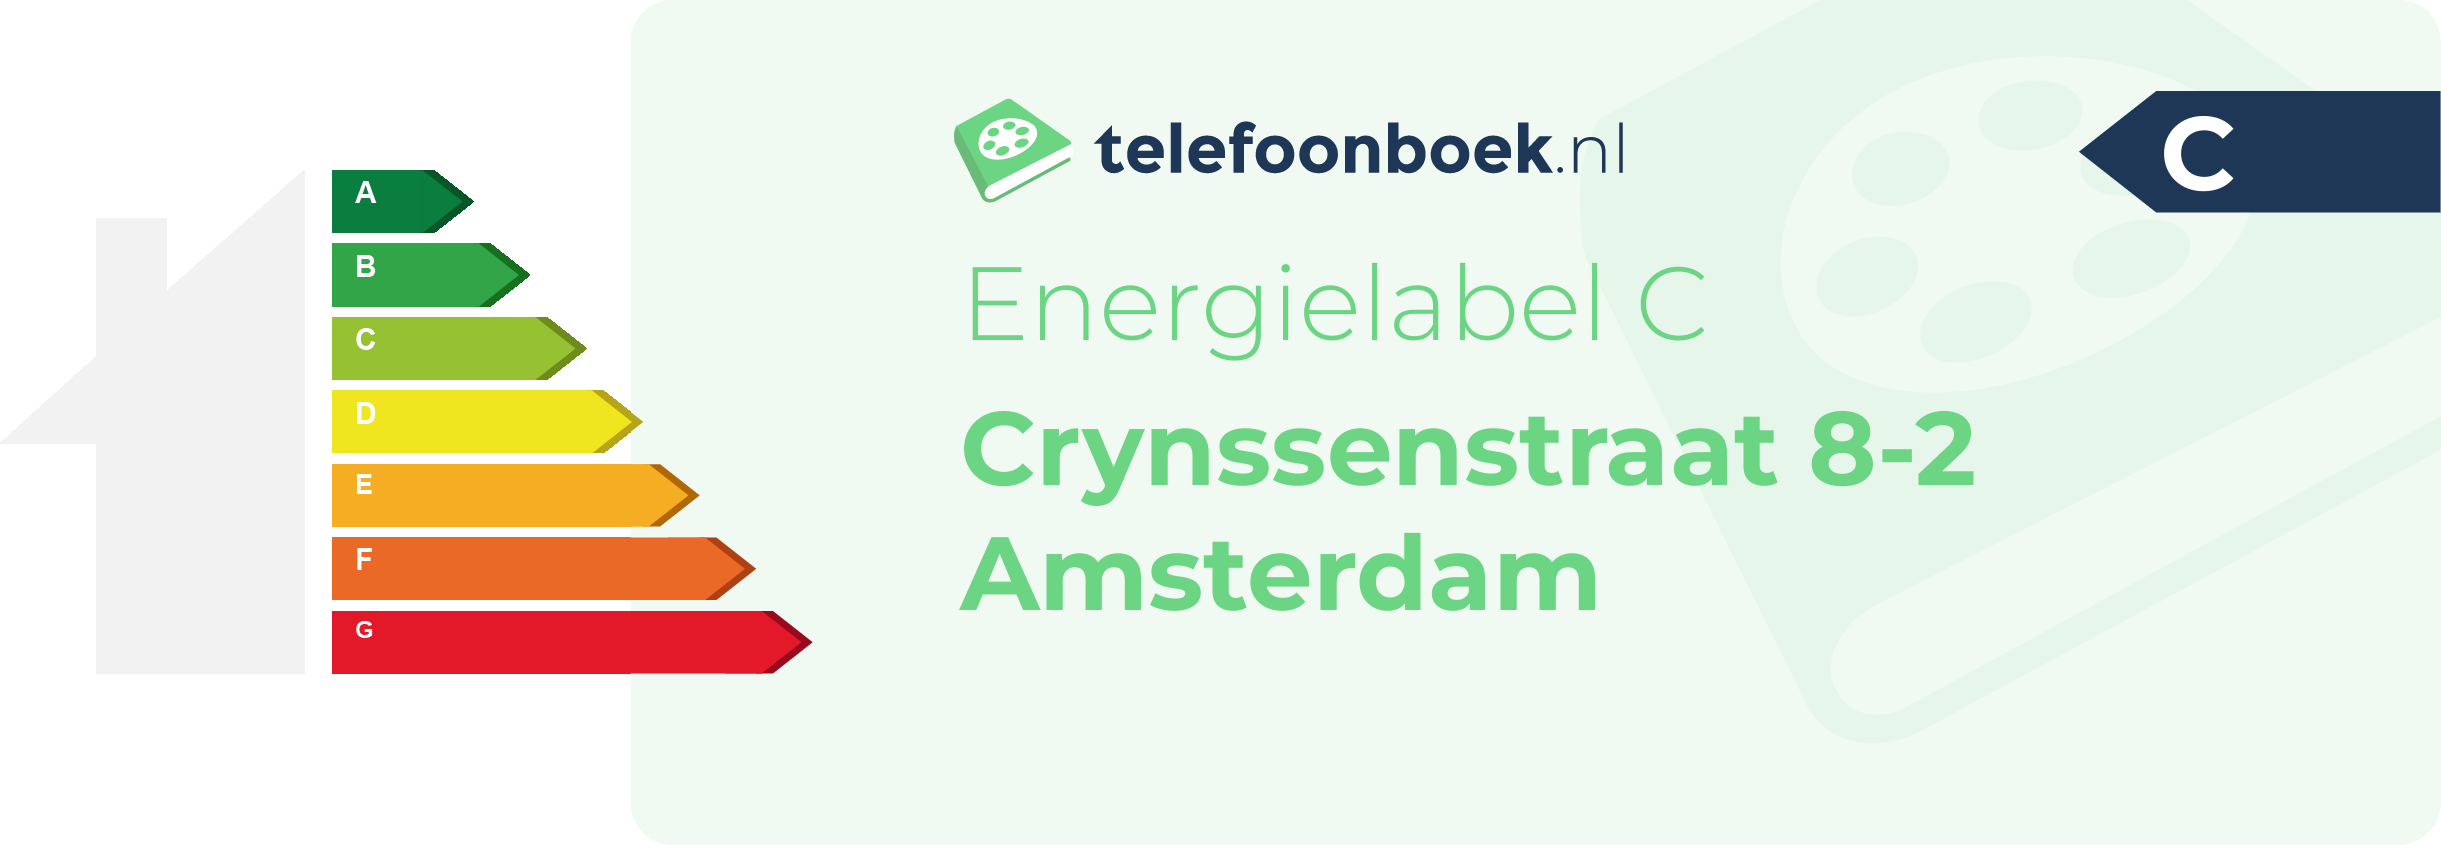 Energielabel Crynssenstraat 8-2 Amsterdam